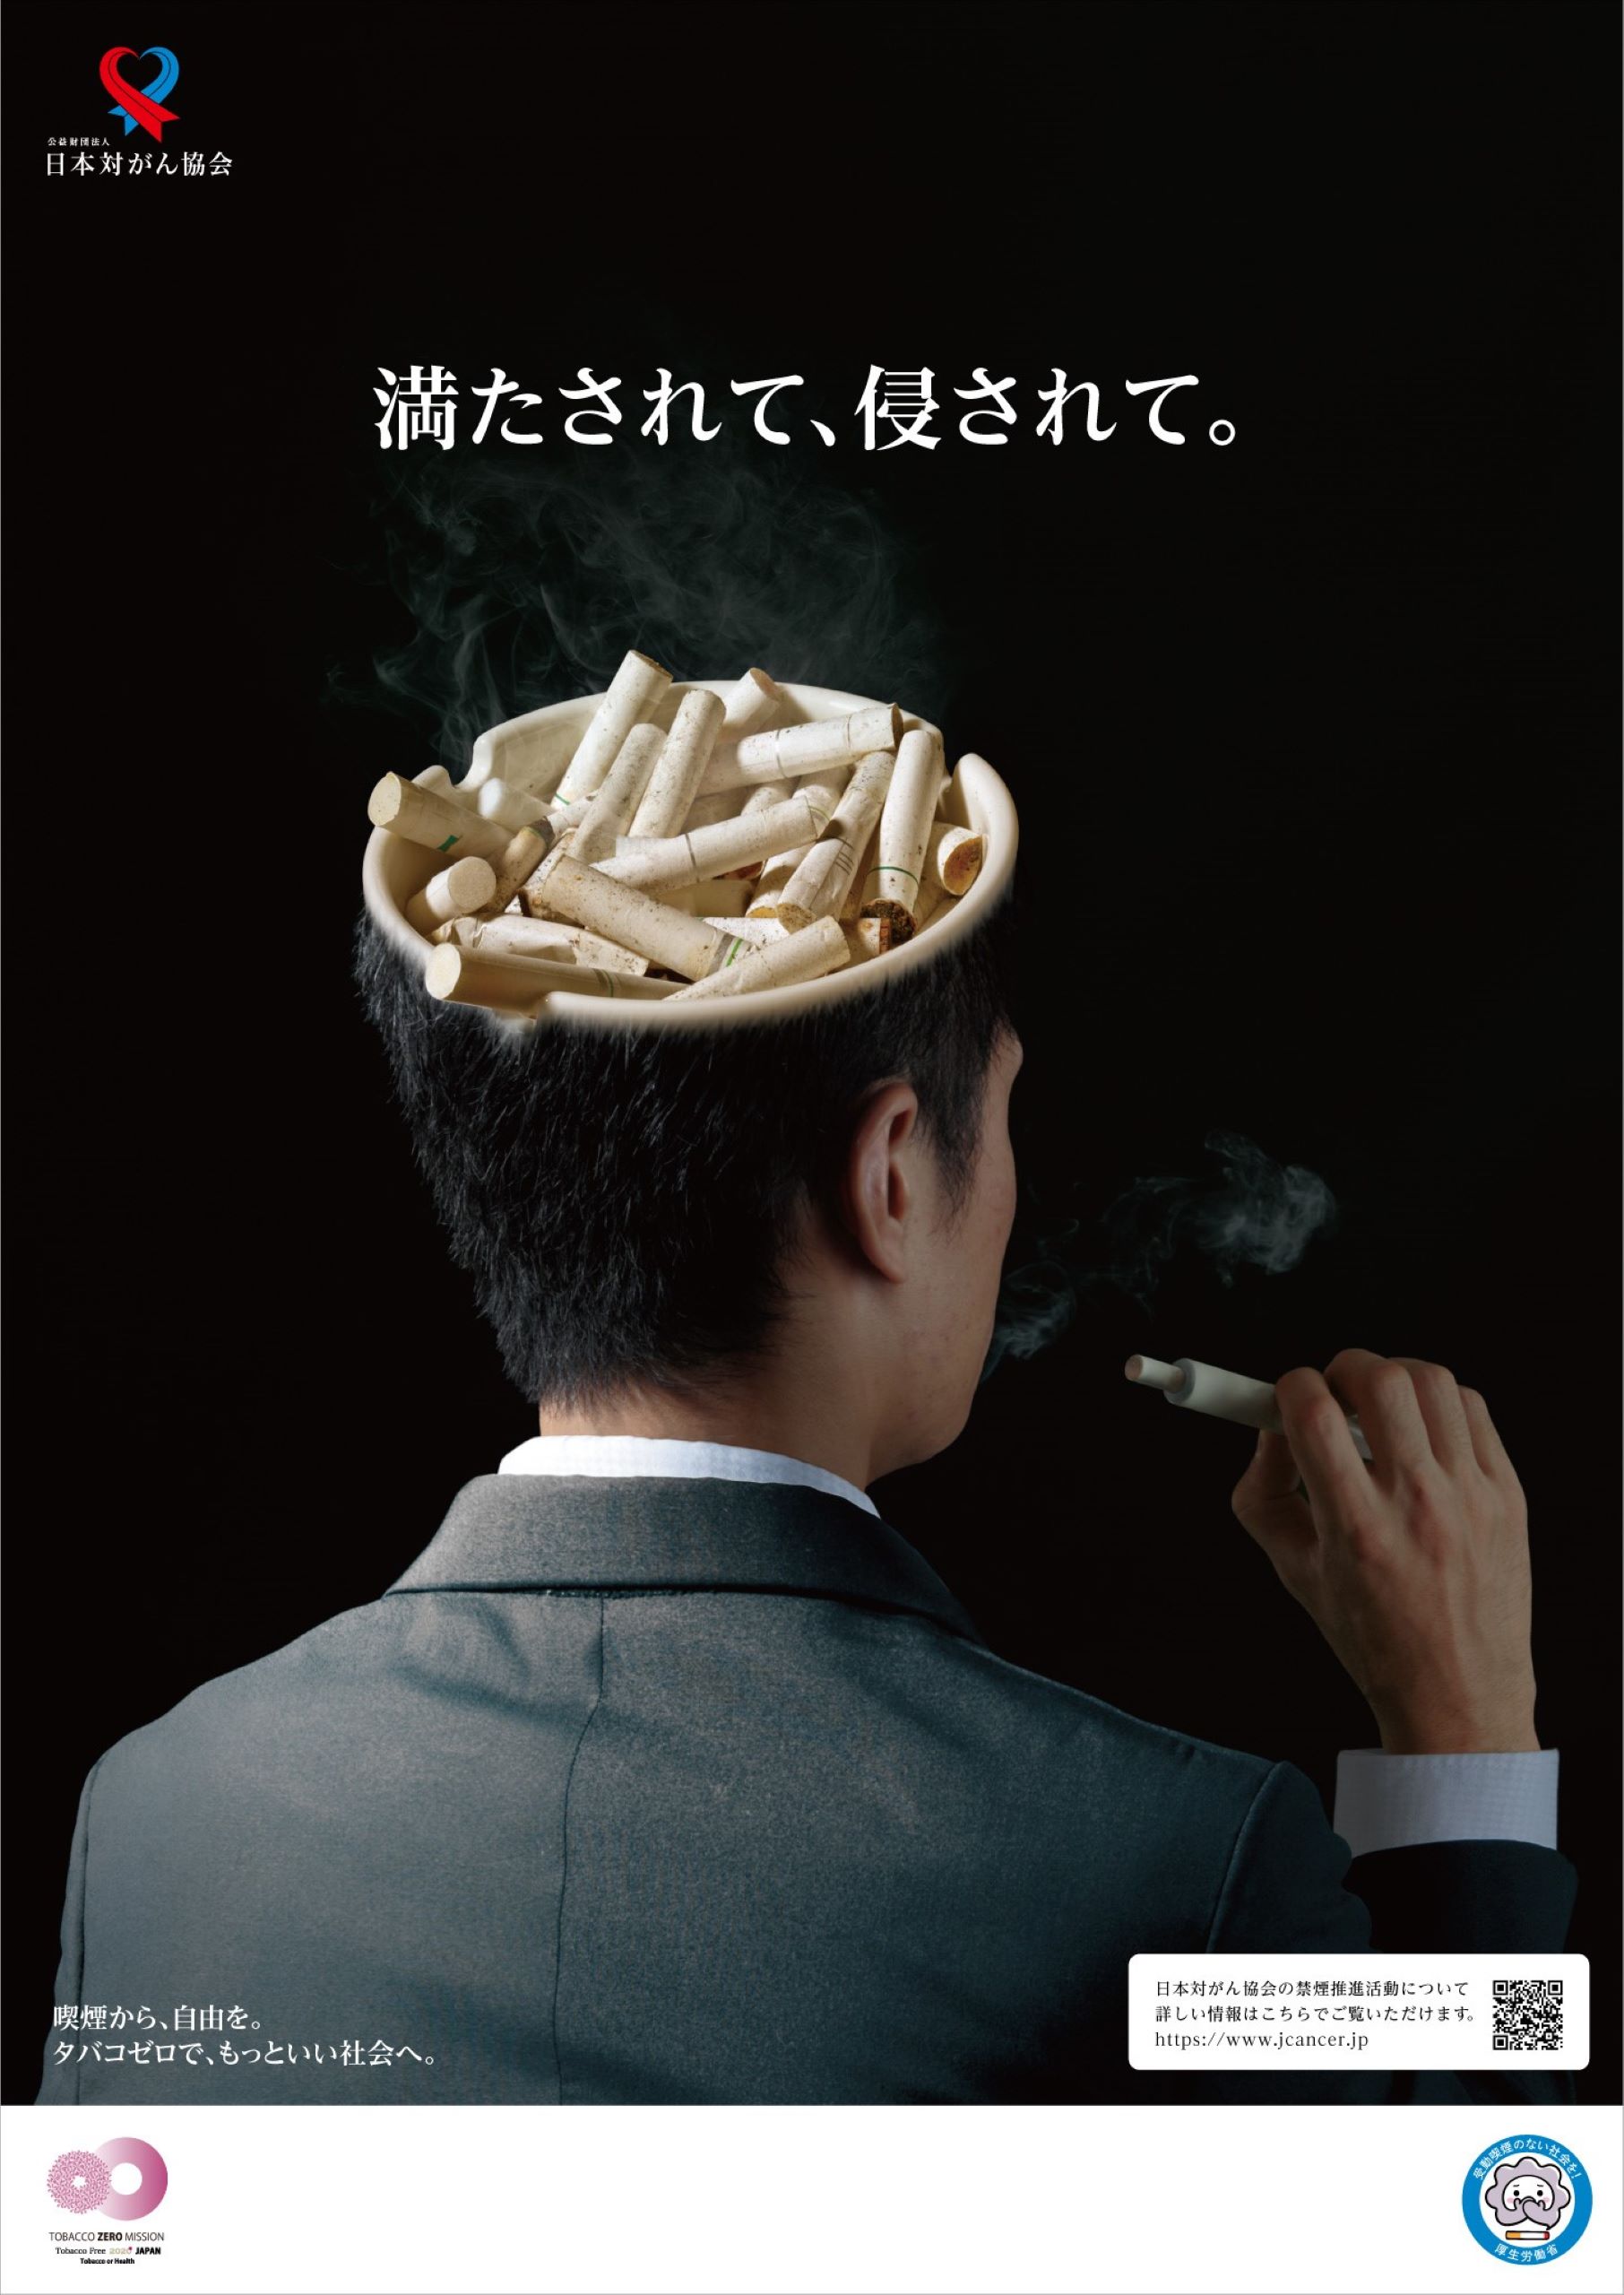 年度版 禁煙ポスター 満たされて 侵されて が完成 日本対がん協会